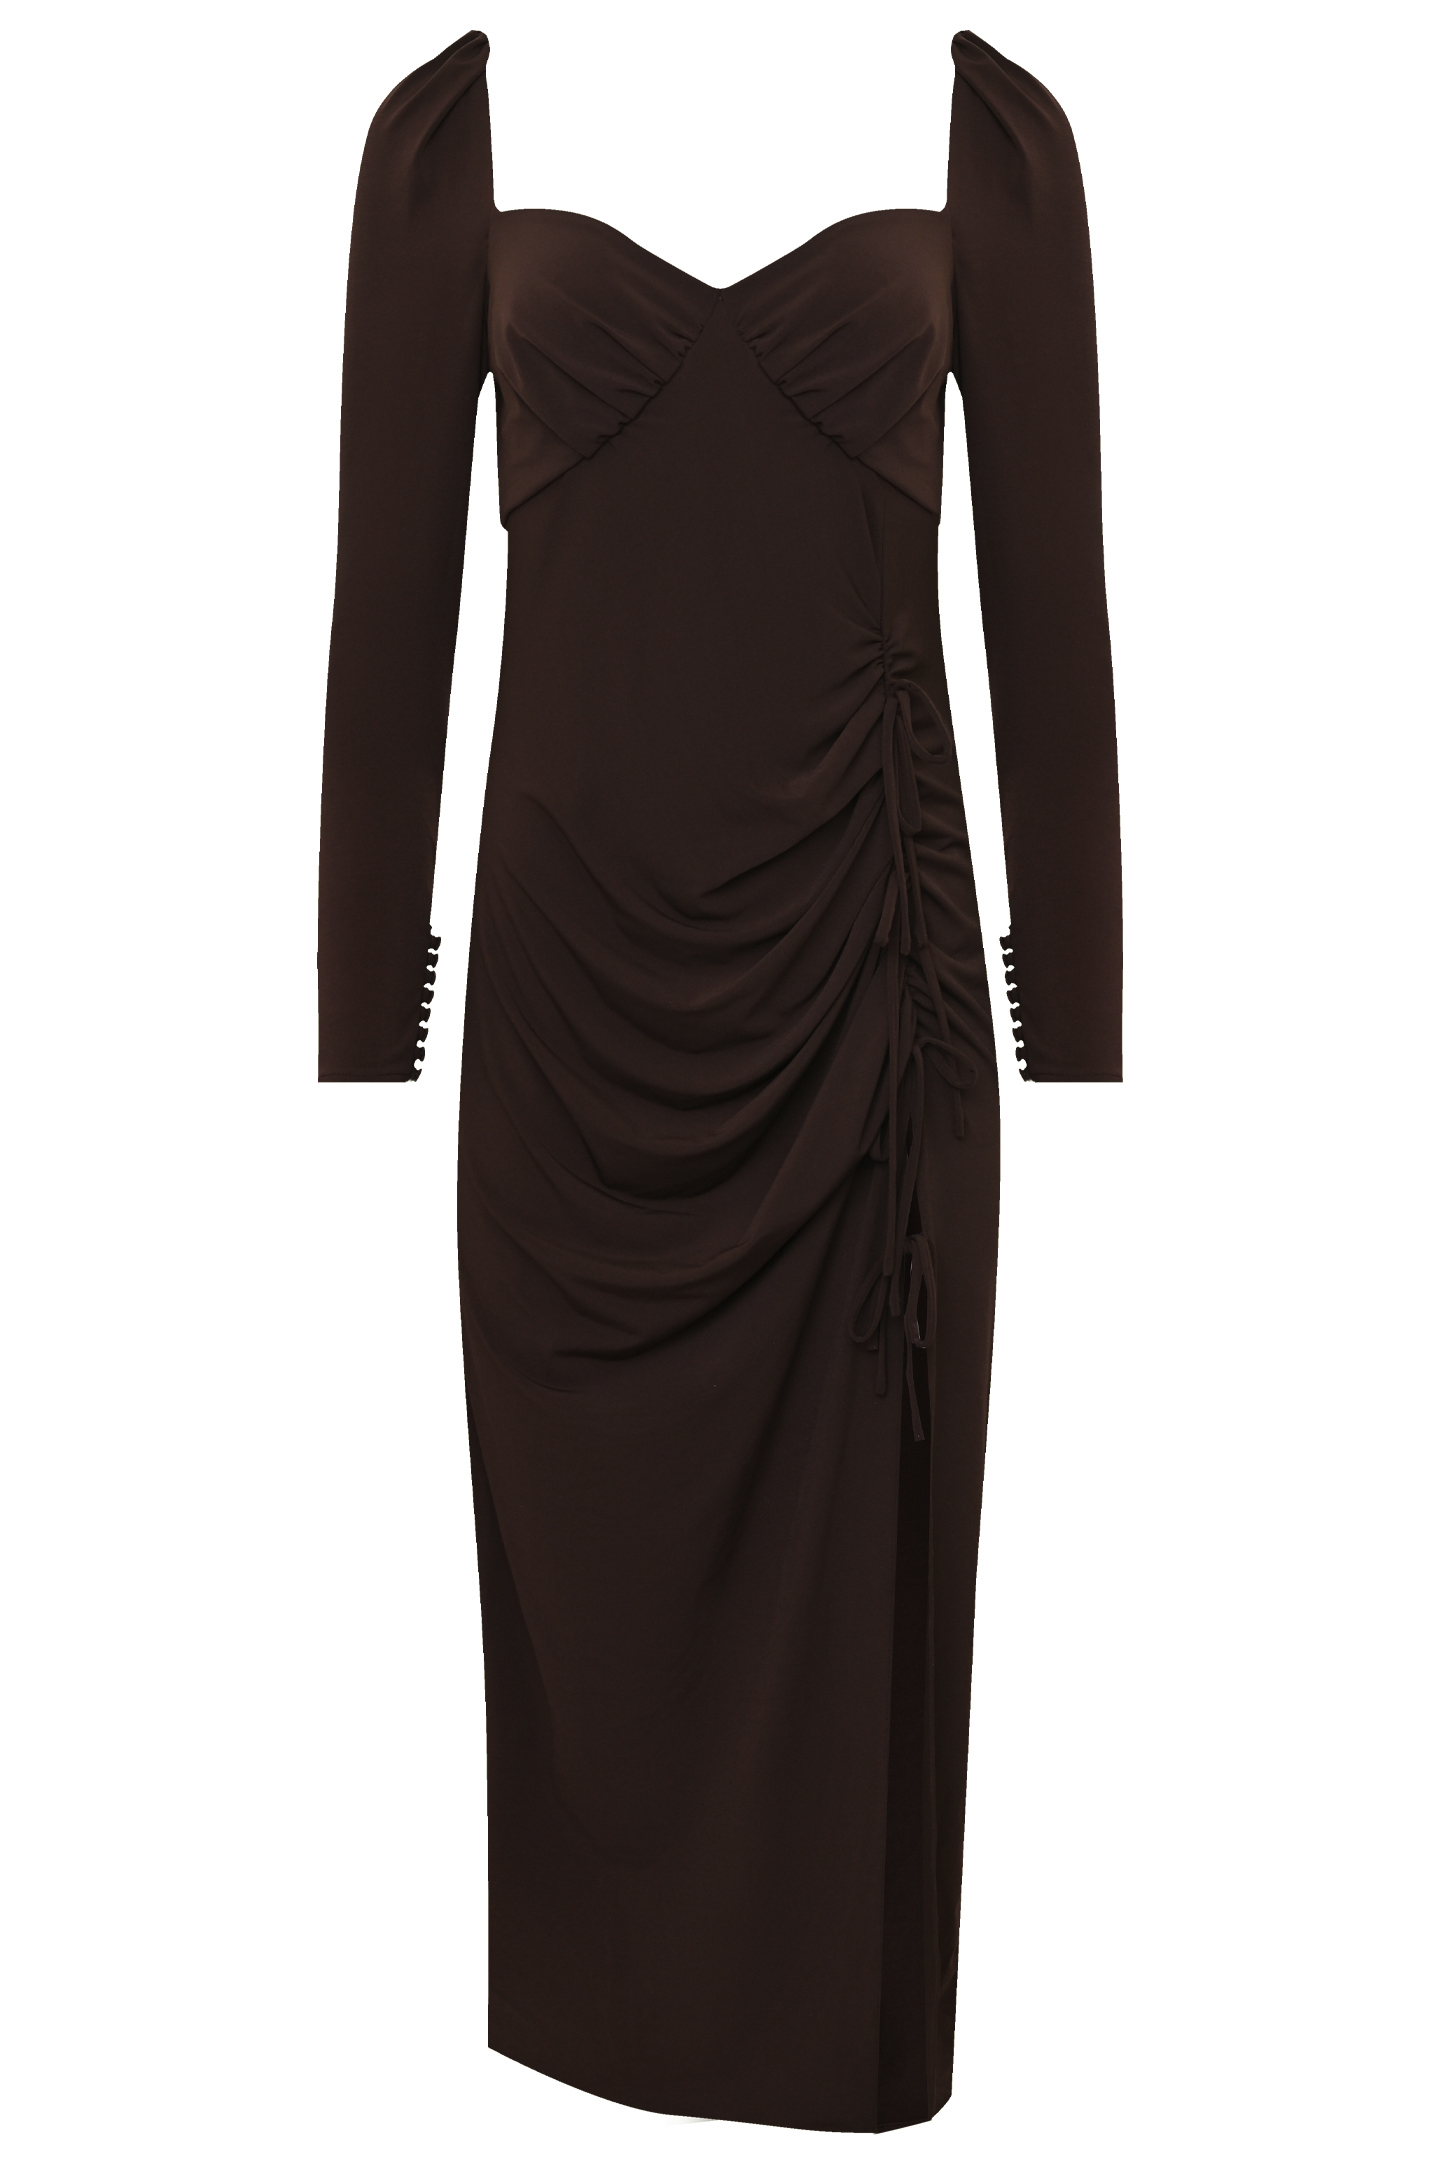 Платье SELF PORTRAIT RS22-114M, цвет: Коричневый, Женский